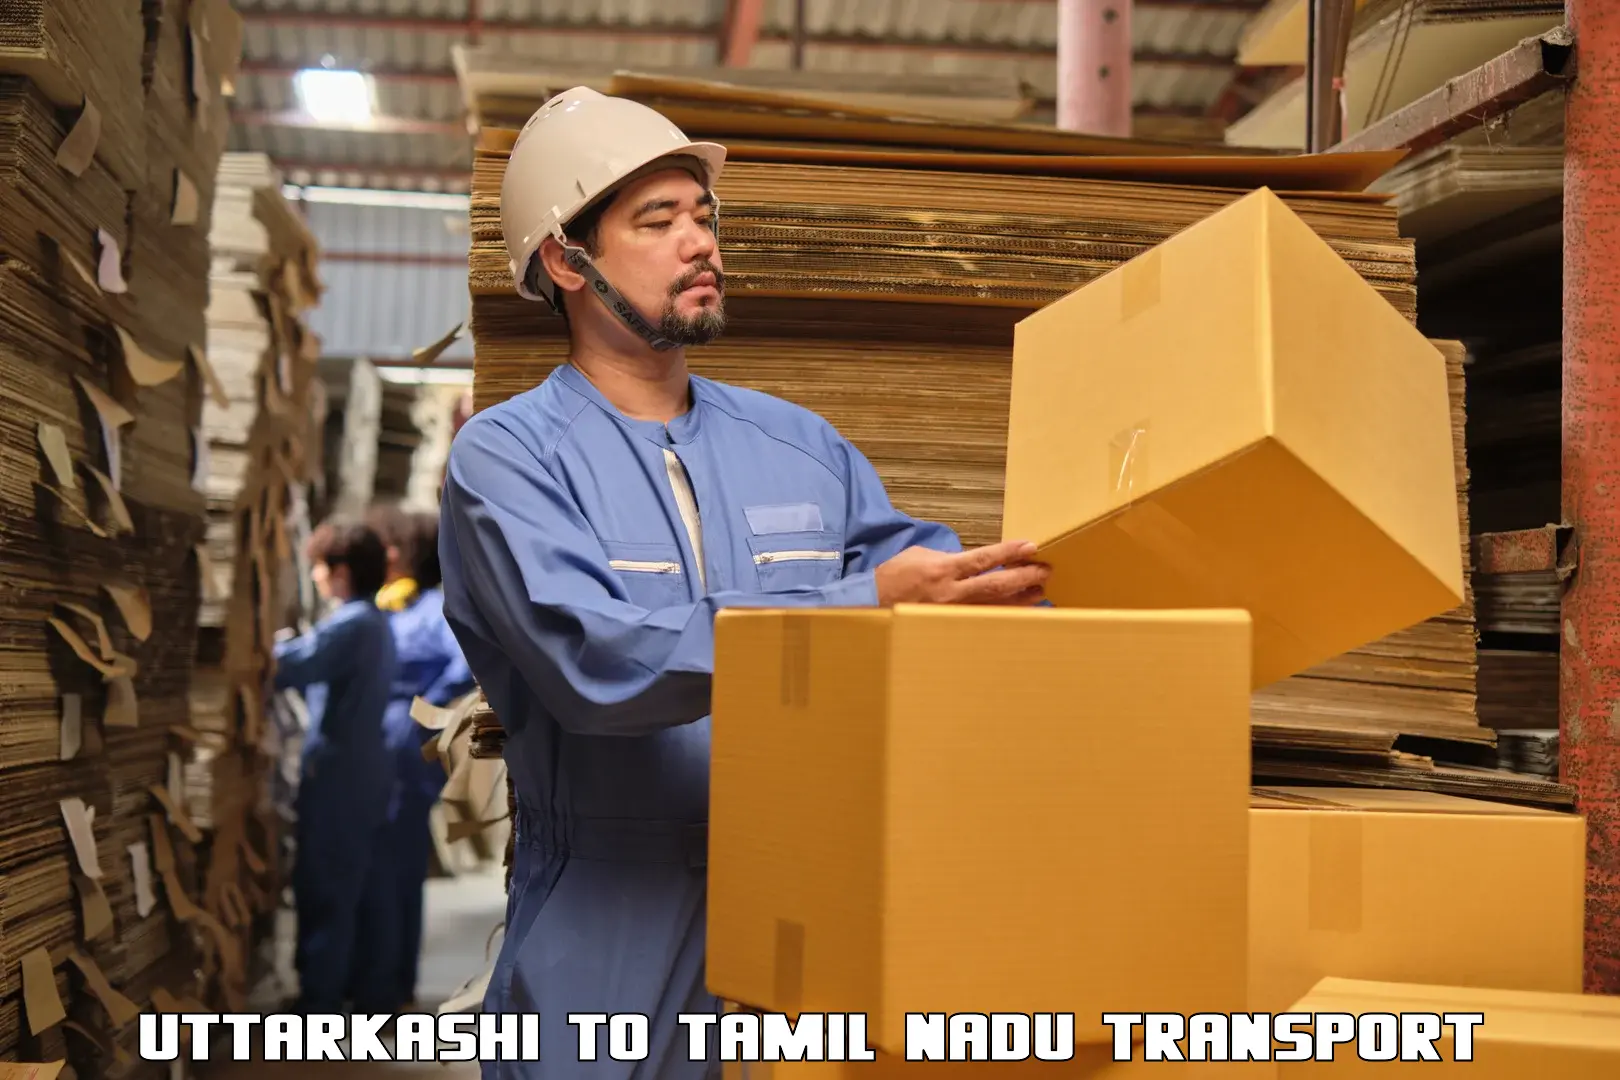 Commercial transport service Uttarkashi to Palladam